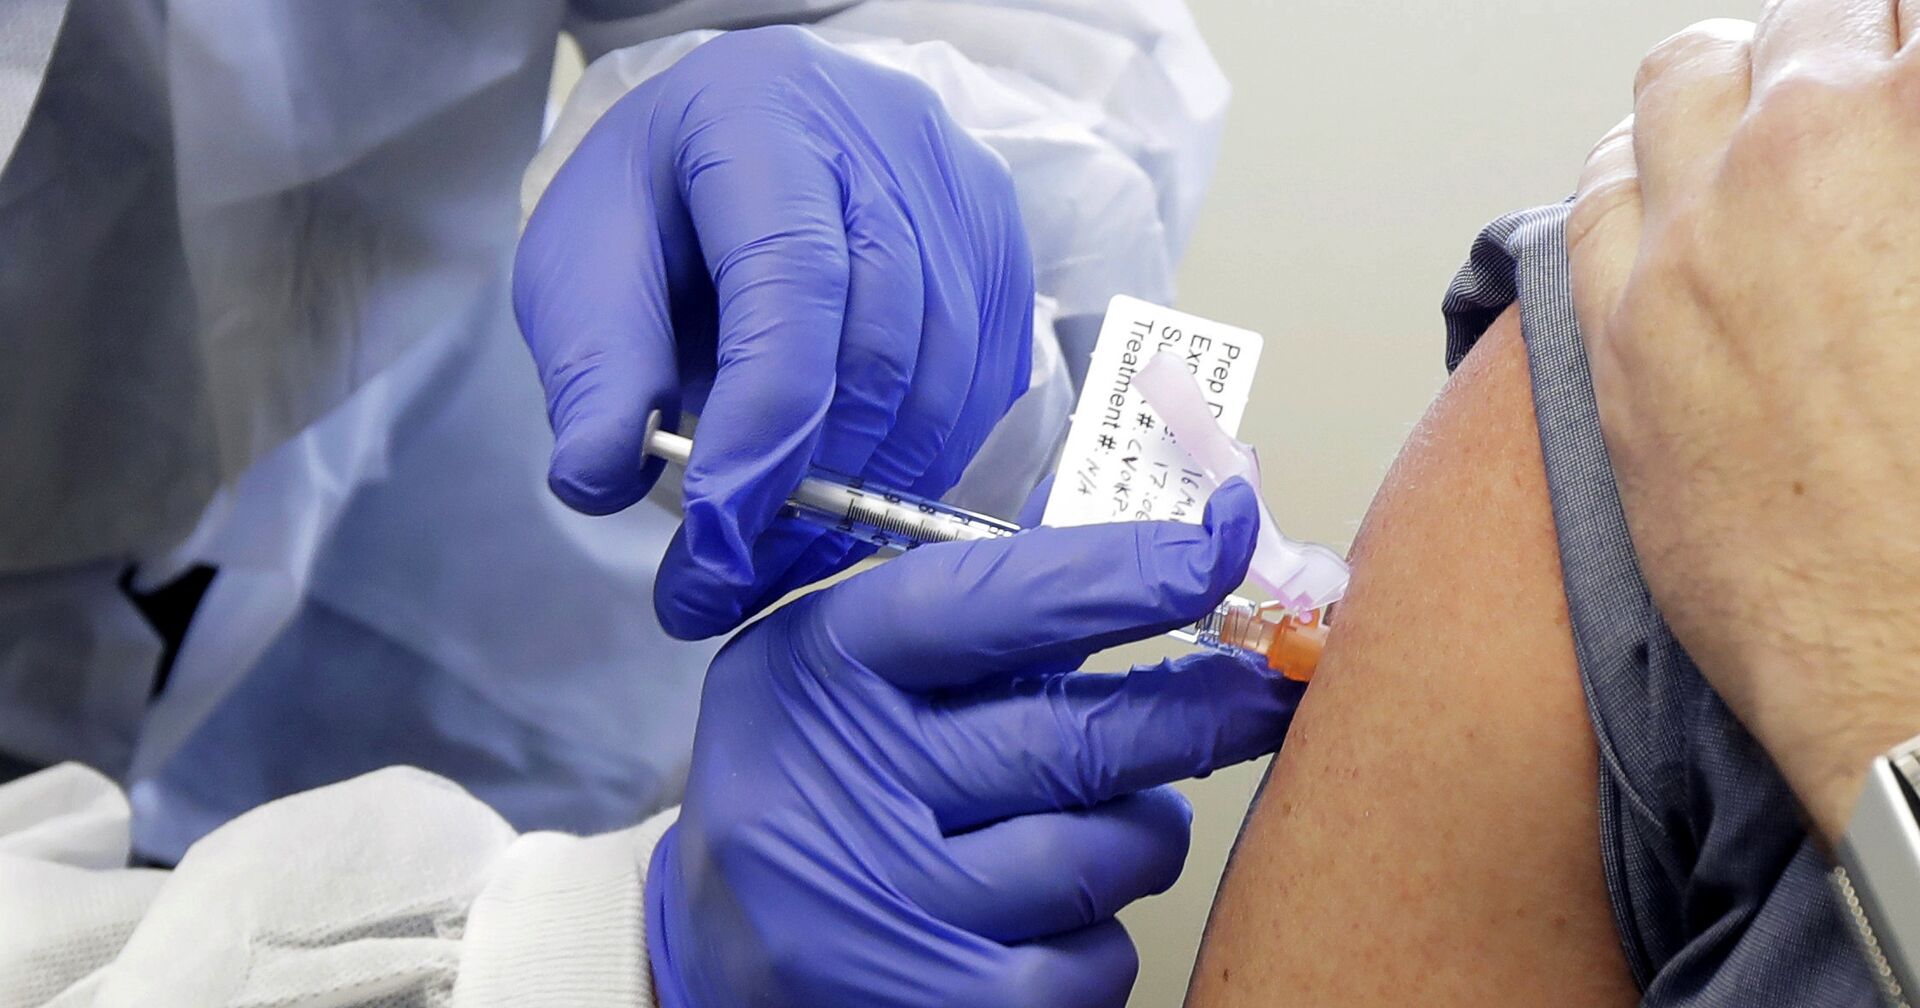 Участнику клинических испытаний вакцины от коронавируса делают инъекцию, Великобритания - ИноСМИ, 1920, 03.12.2020